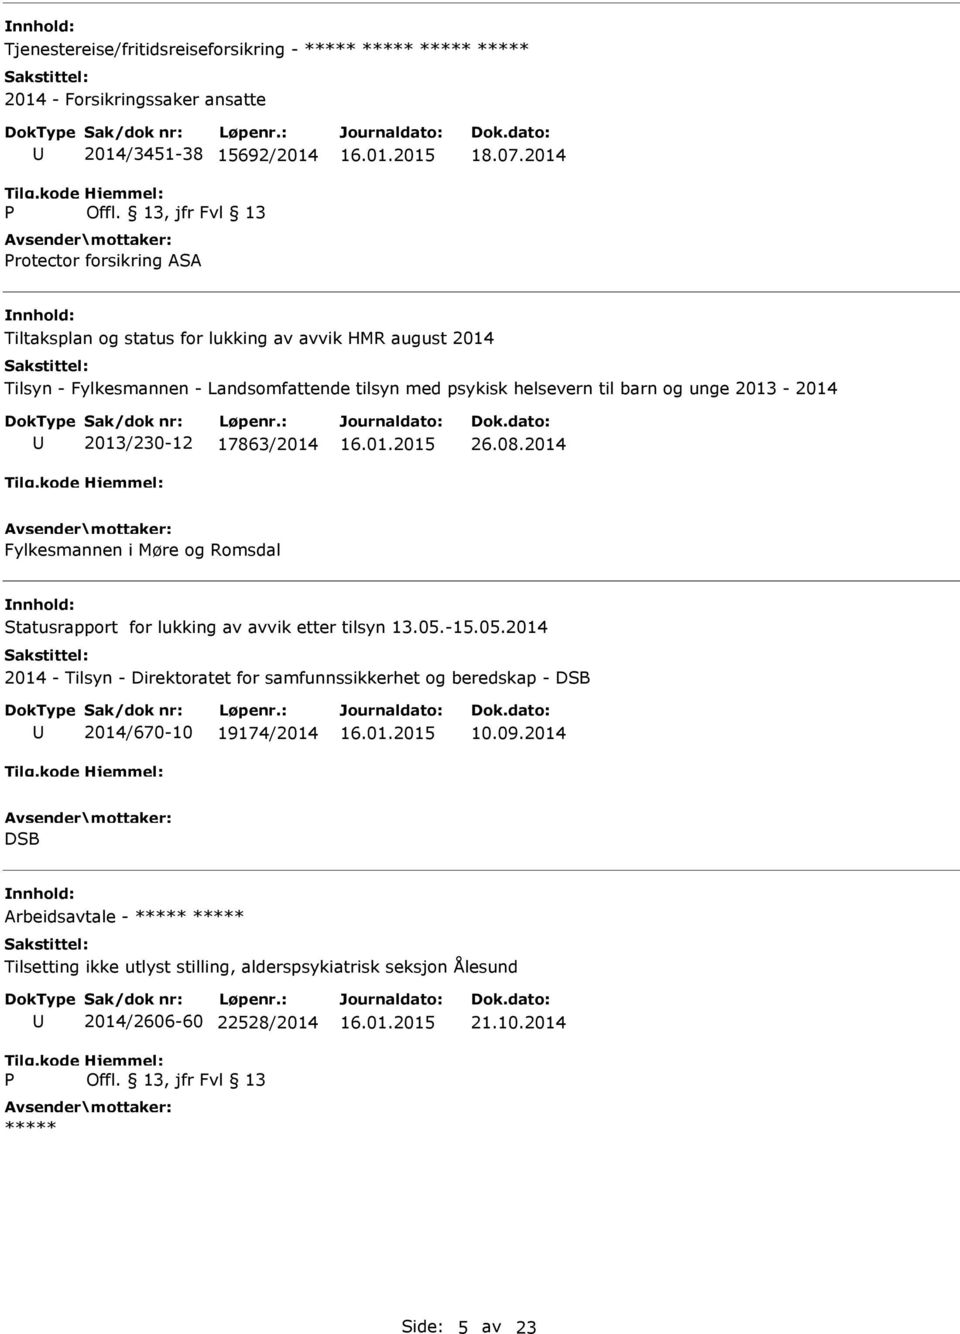 2013-2014 2013/230-12 17863/2014 26.08.2014 Fylkesmannen i Møre og Romsdal Statusrapport for lukking av avvik etter tilsyn 13.05.